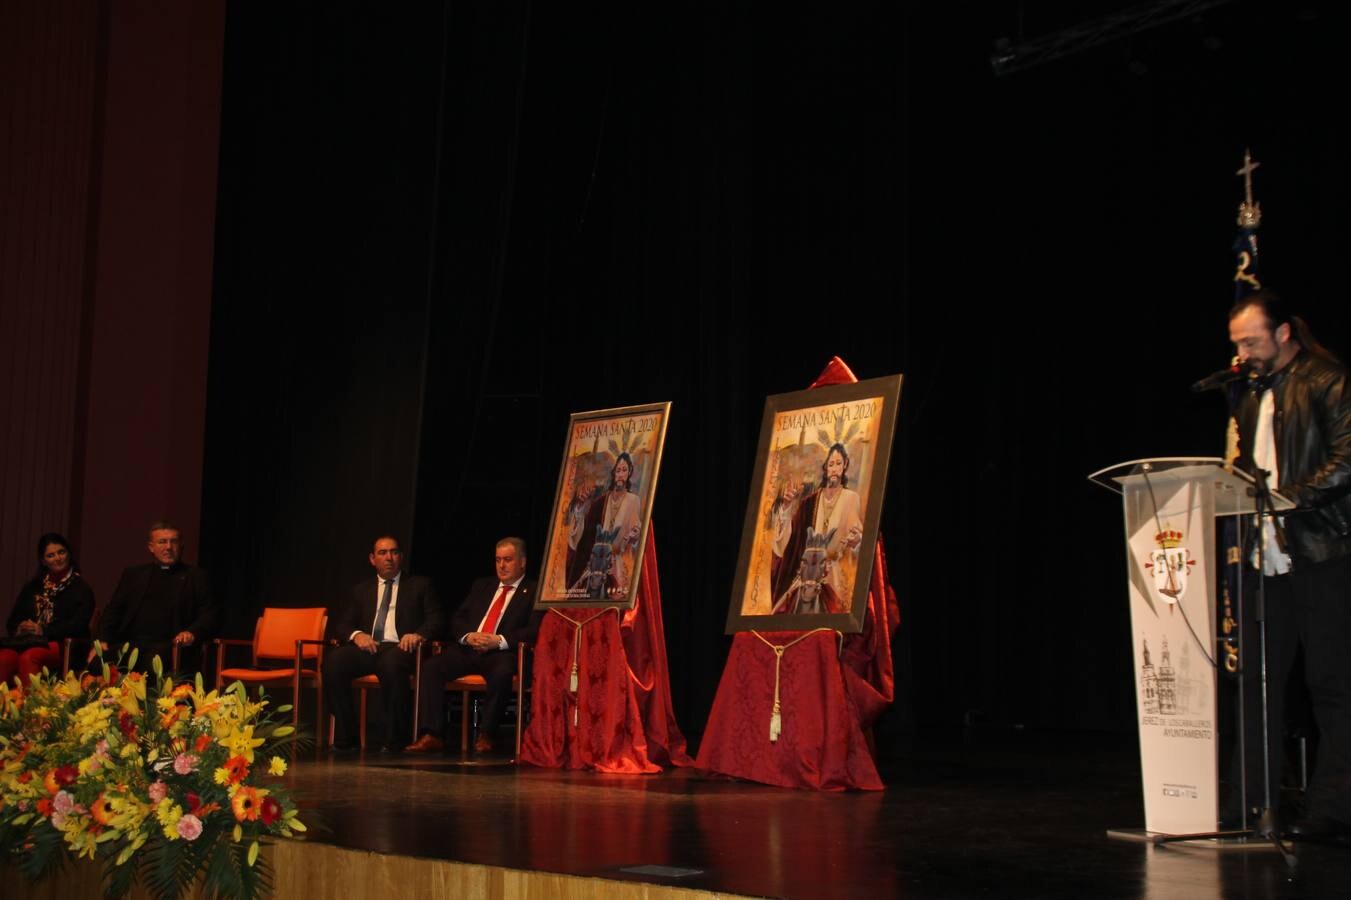 La autora del cartel,Nuria Barrera, el presidente de la Junta de Cofradías, el alcalde de Jerez, el Hermano Mayor de la Cofradía de Santo Domingo de Guzmán y el párroco de la ciudad, junto al cartel que anuncia la Semana Santa de Jerez de los Caballeros 2020. 